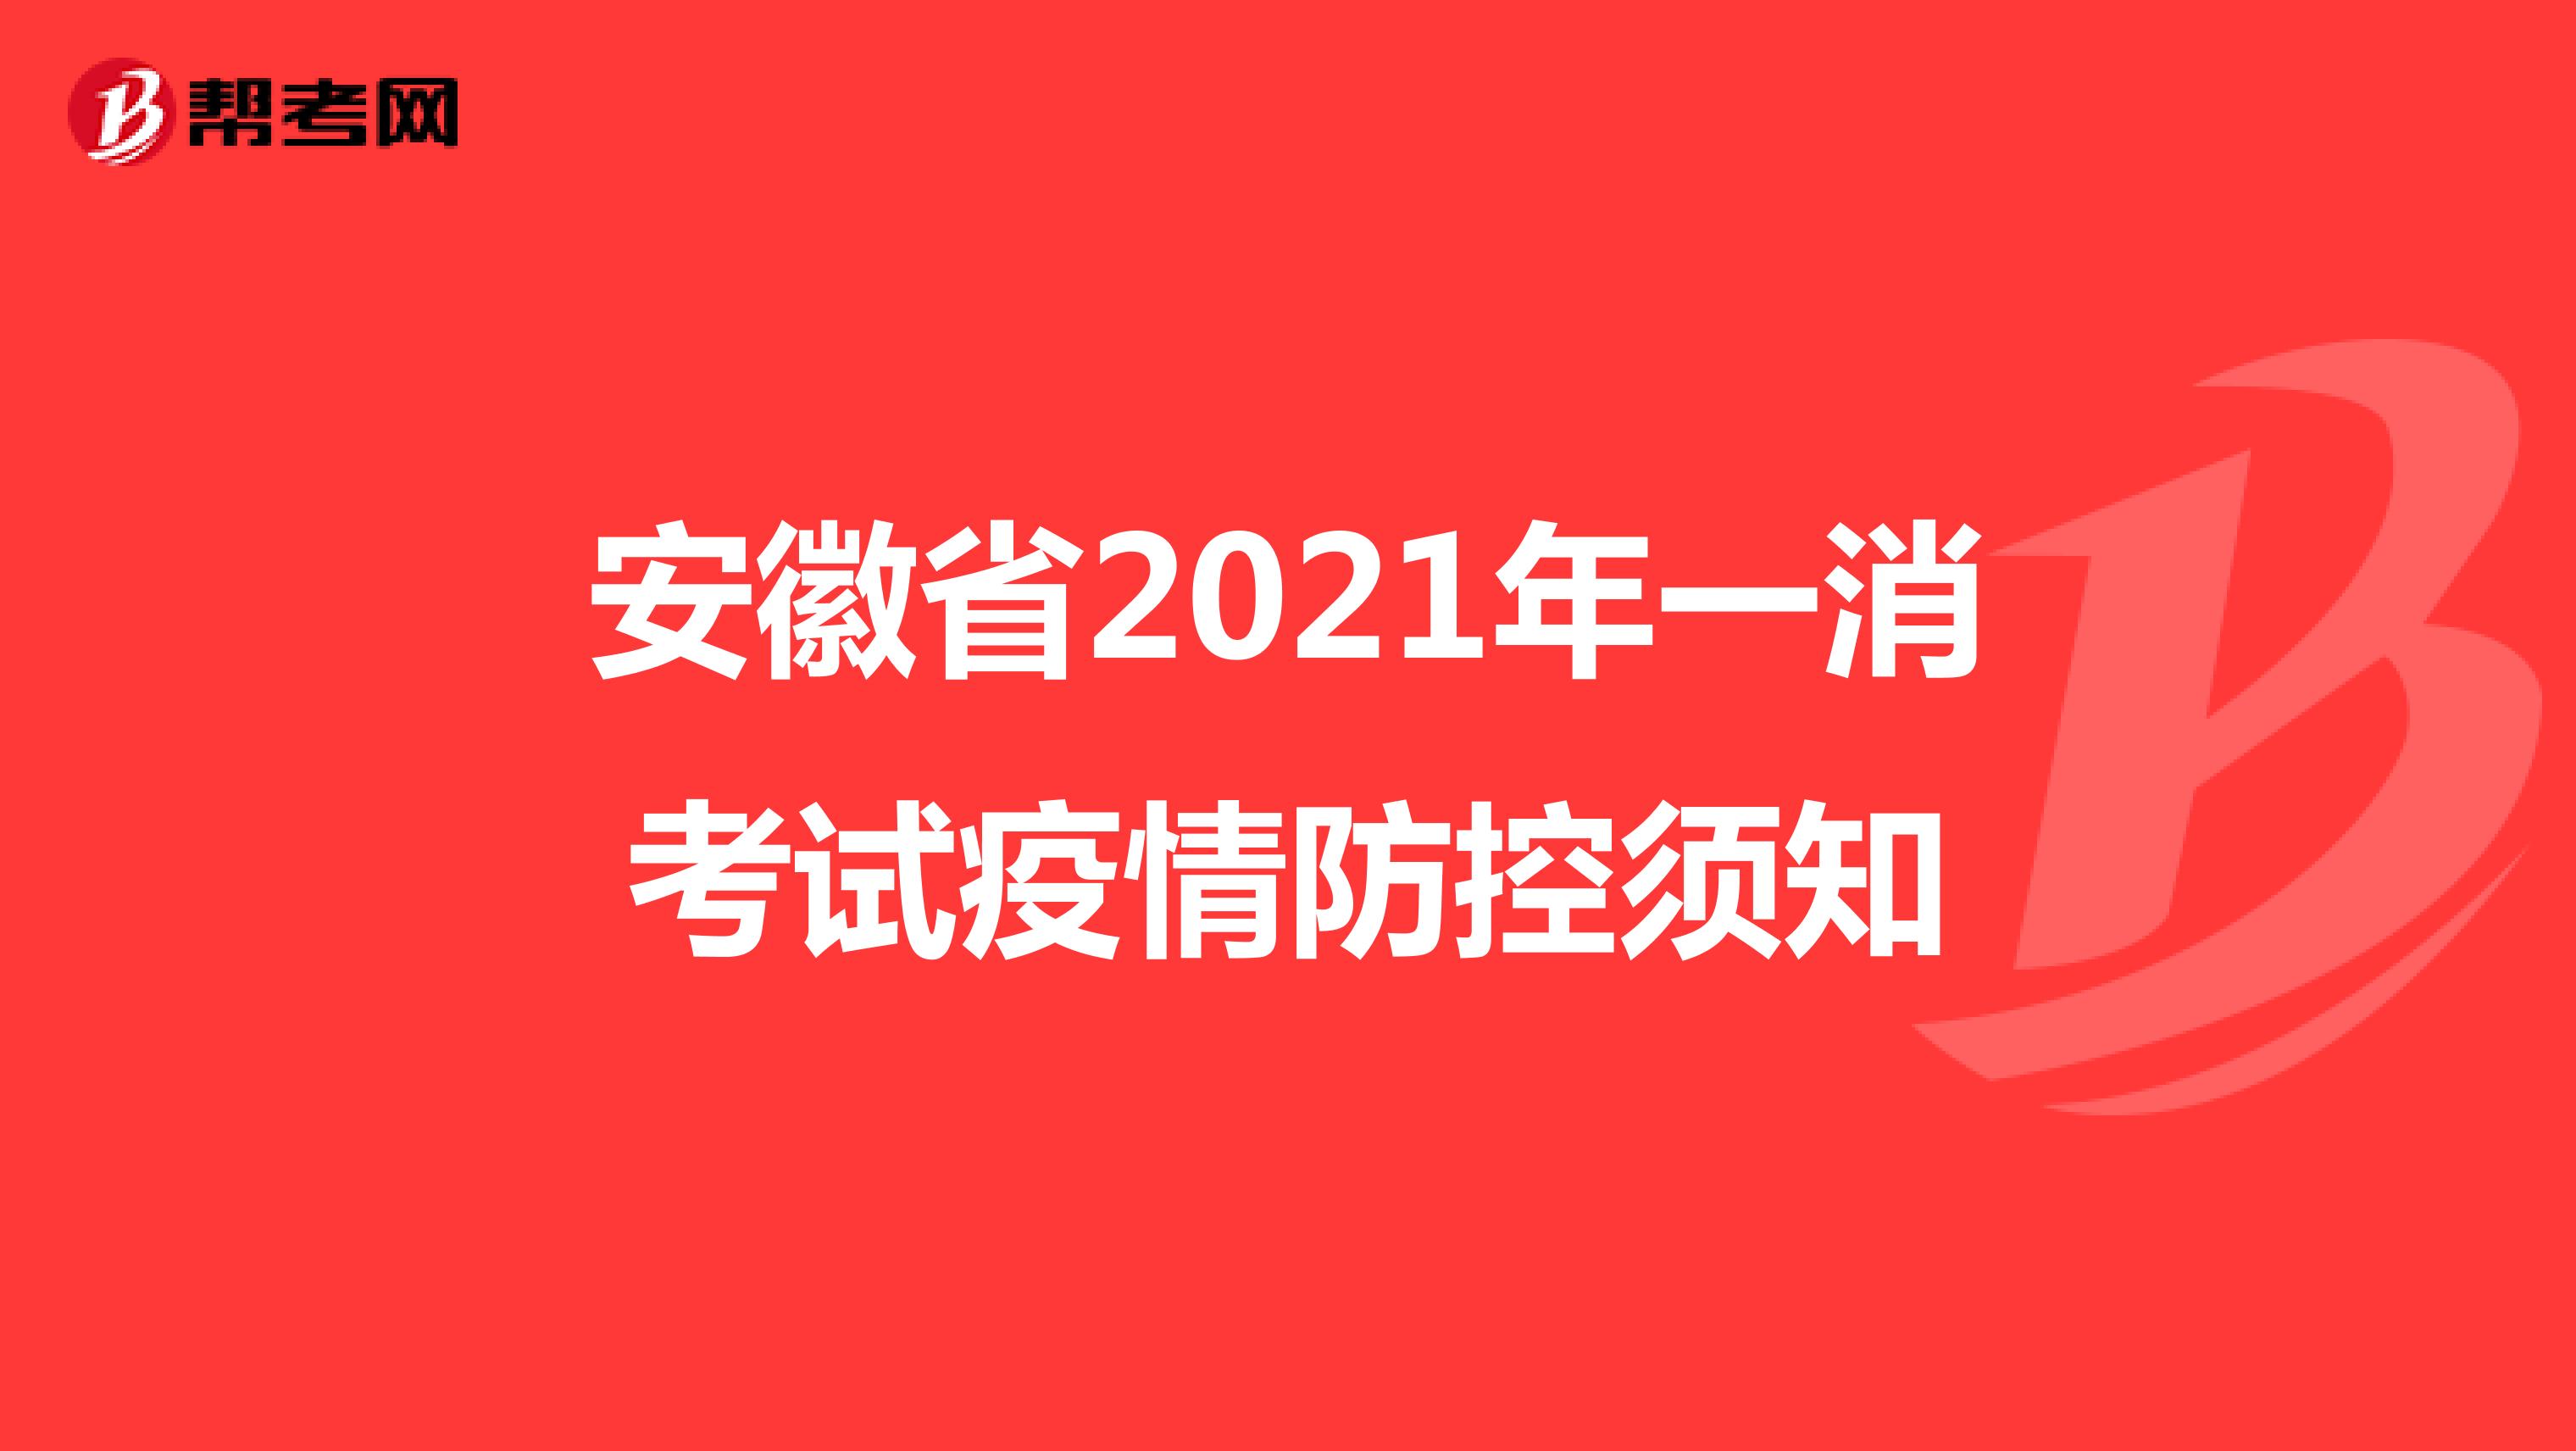 安徽省2021年一消考试疫情防控须知